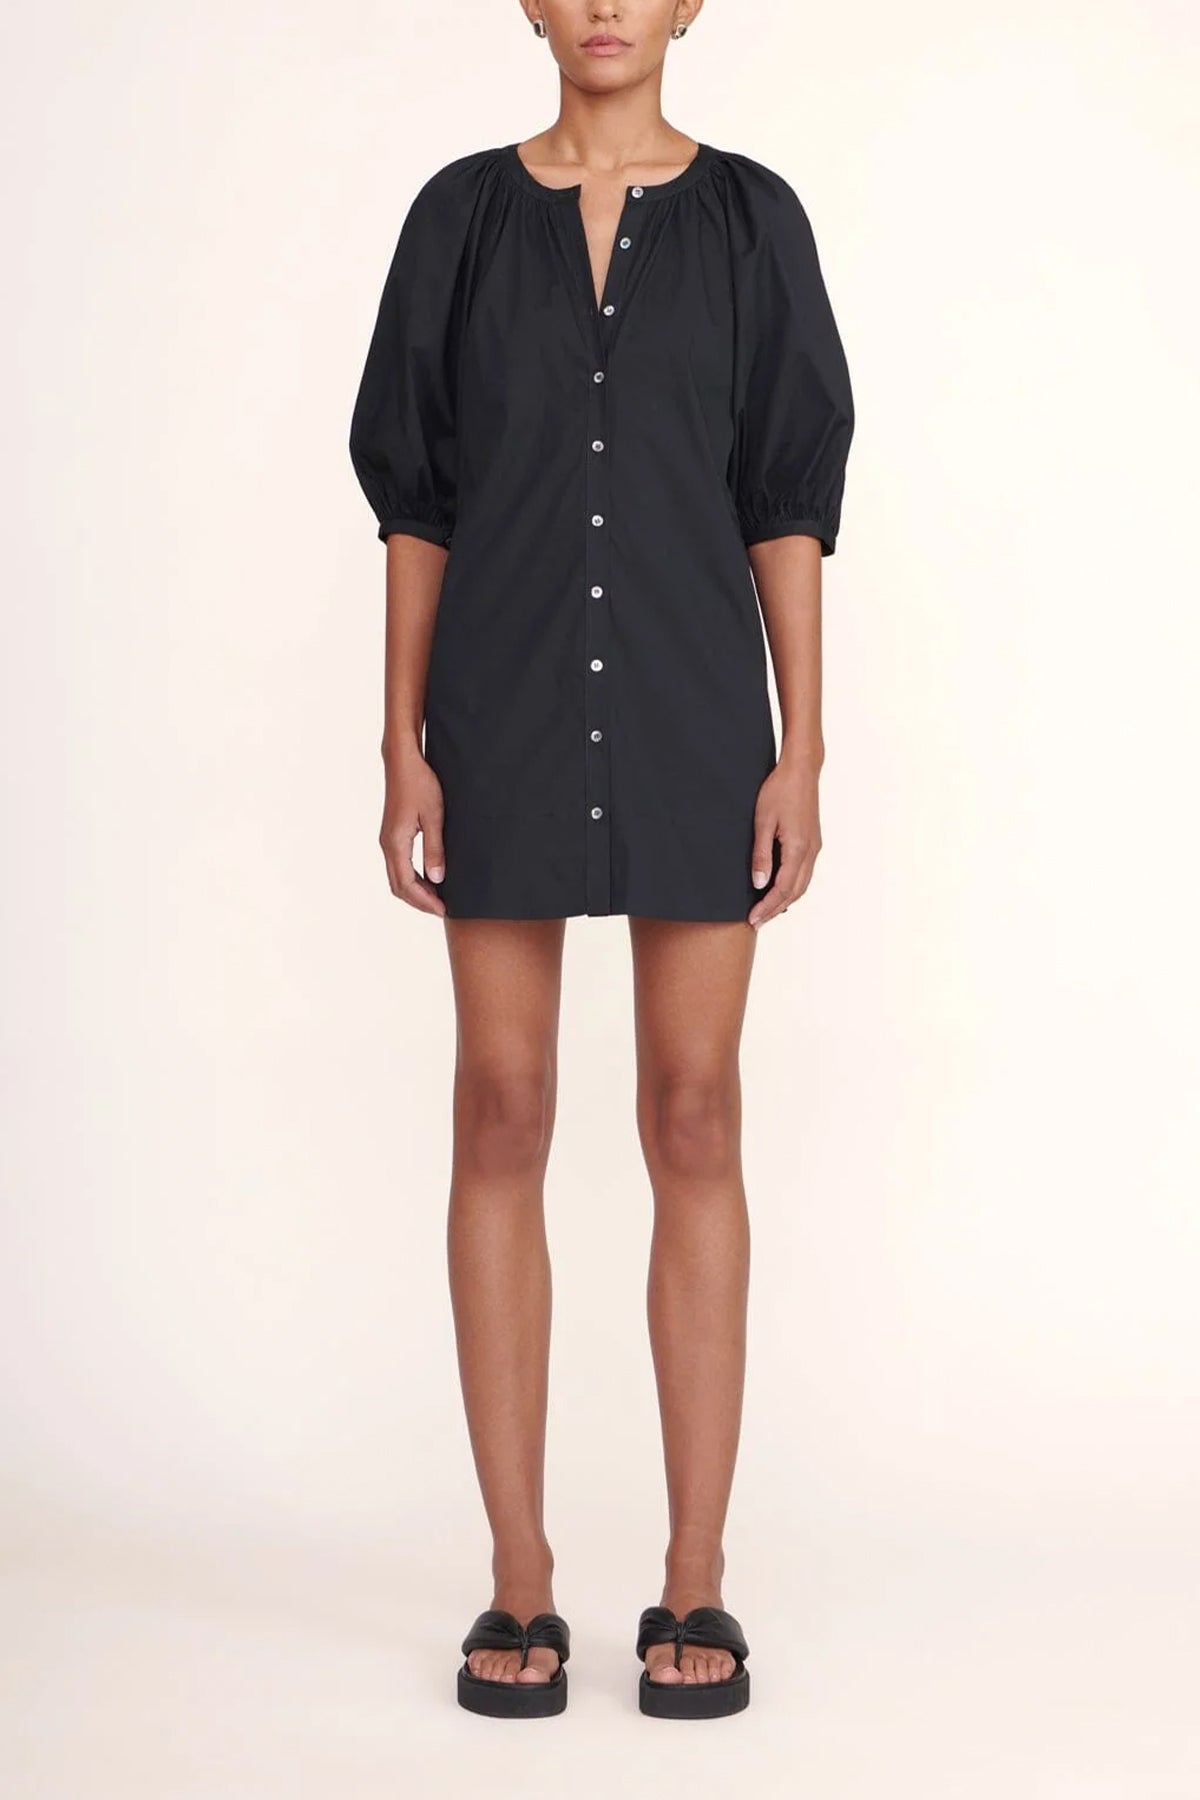 Mini Vincent Dress in Black - shop-olivia.com